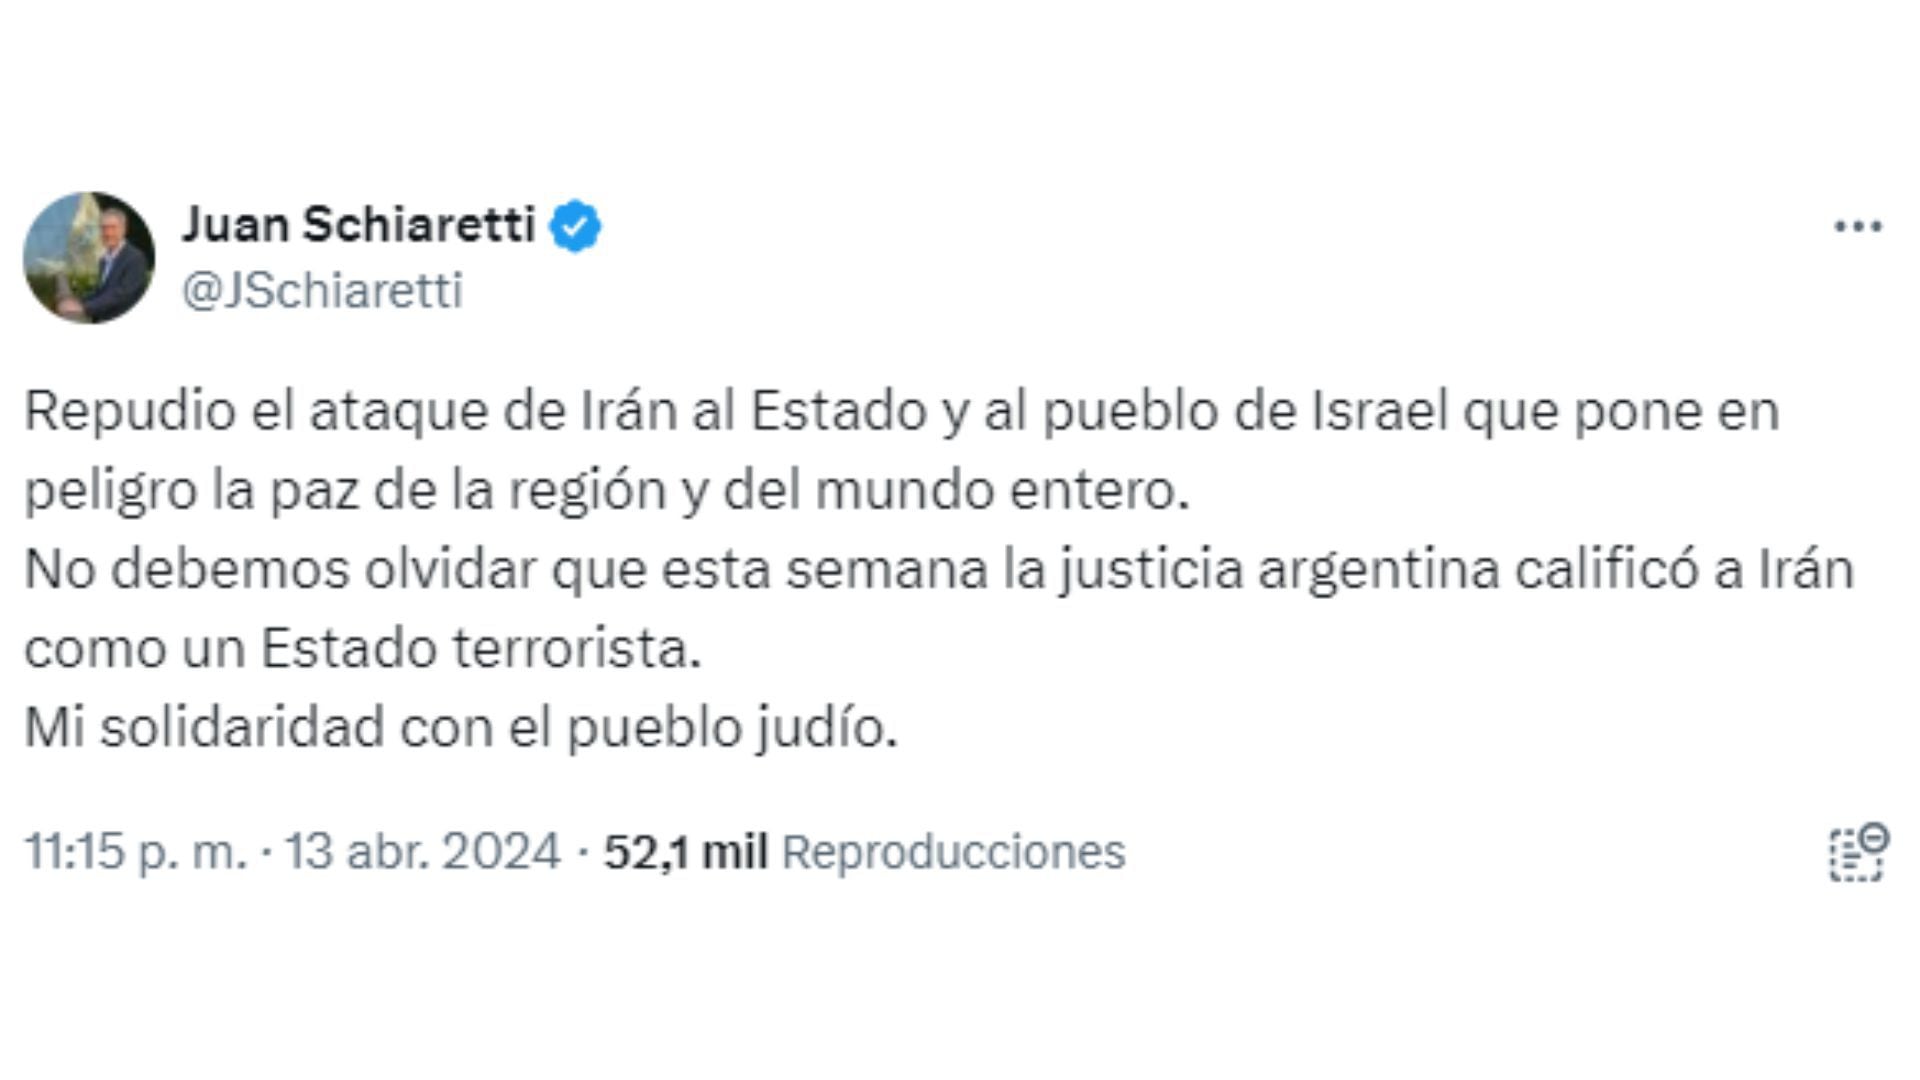 Tweet de Juan Schiaretti  sobre el ataque de Irán a Israel